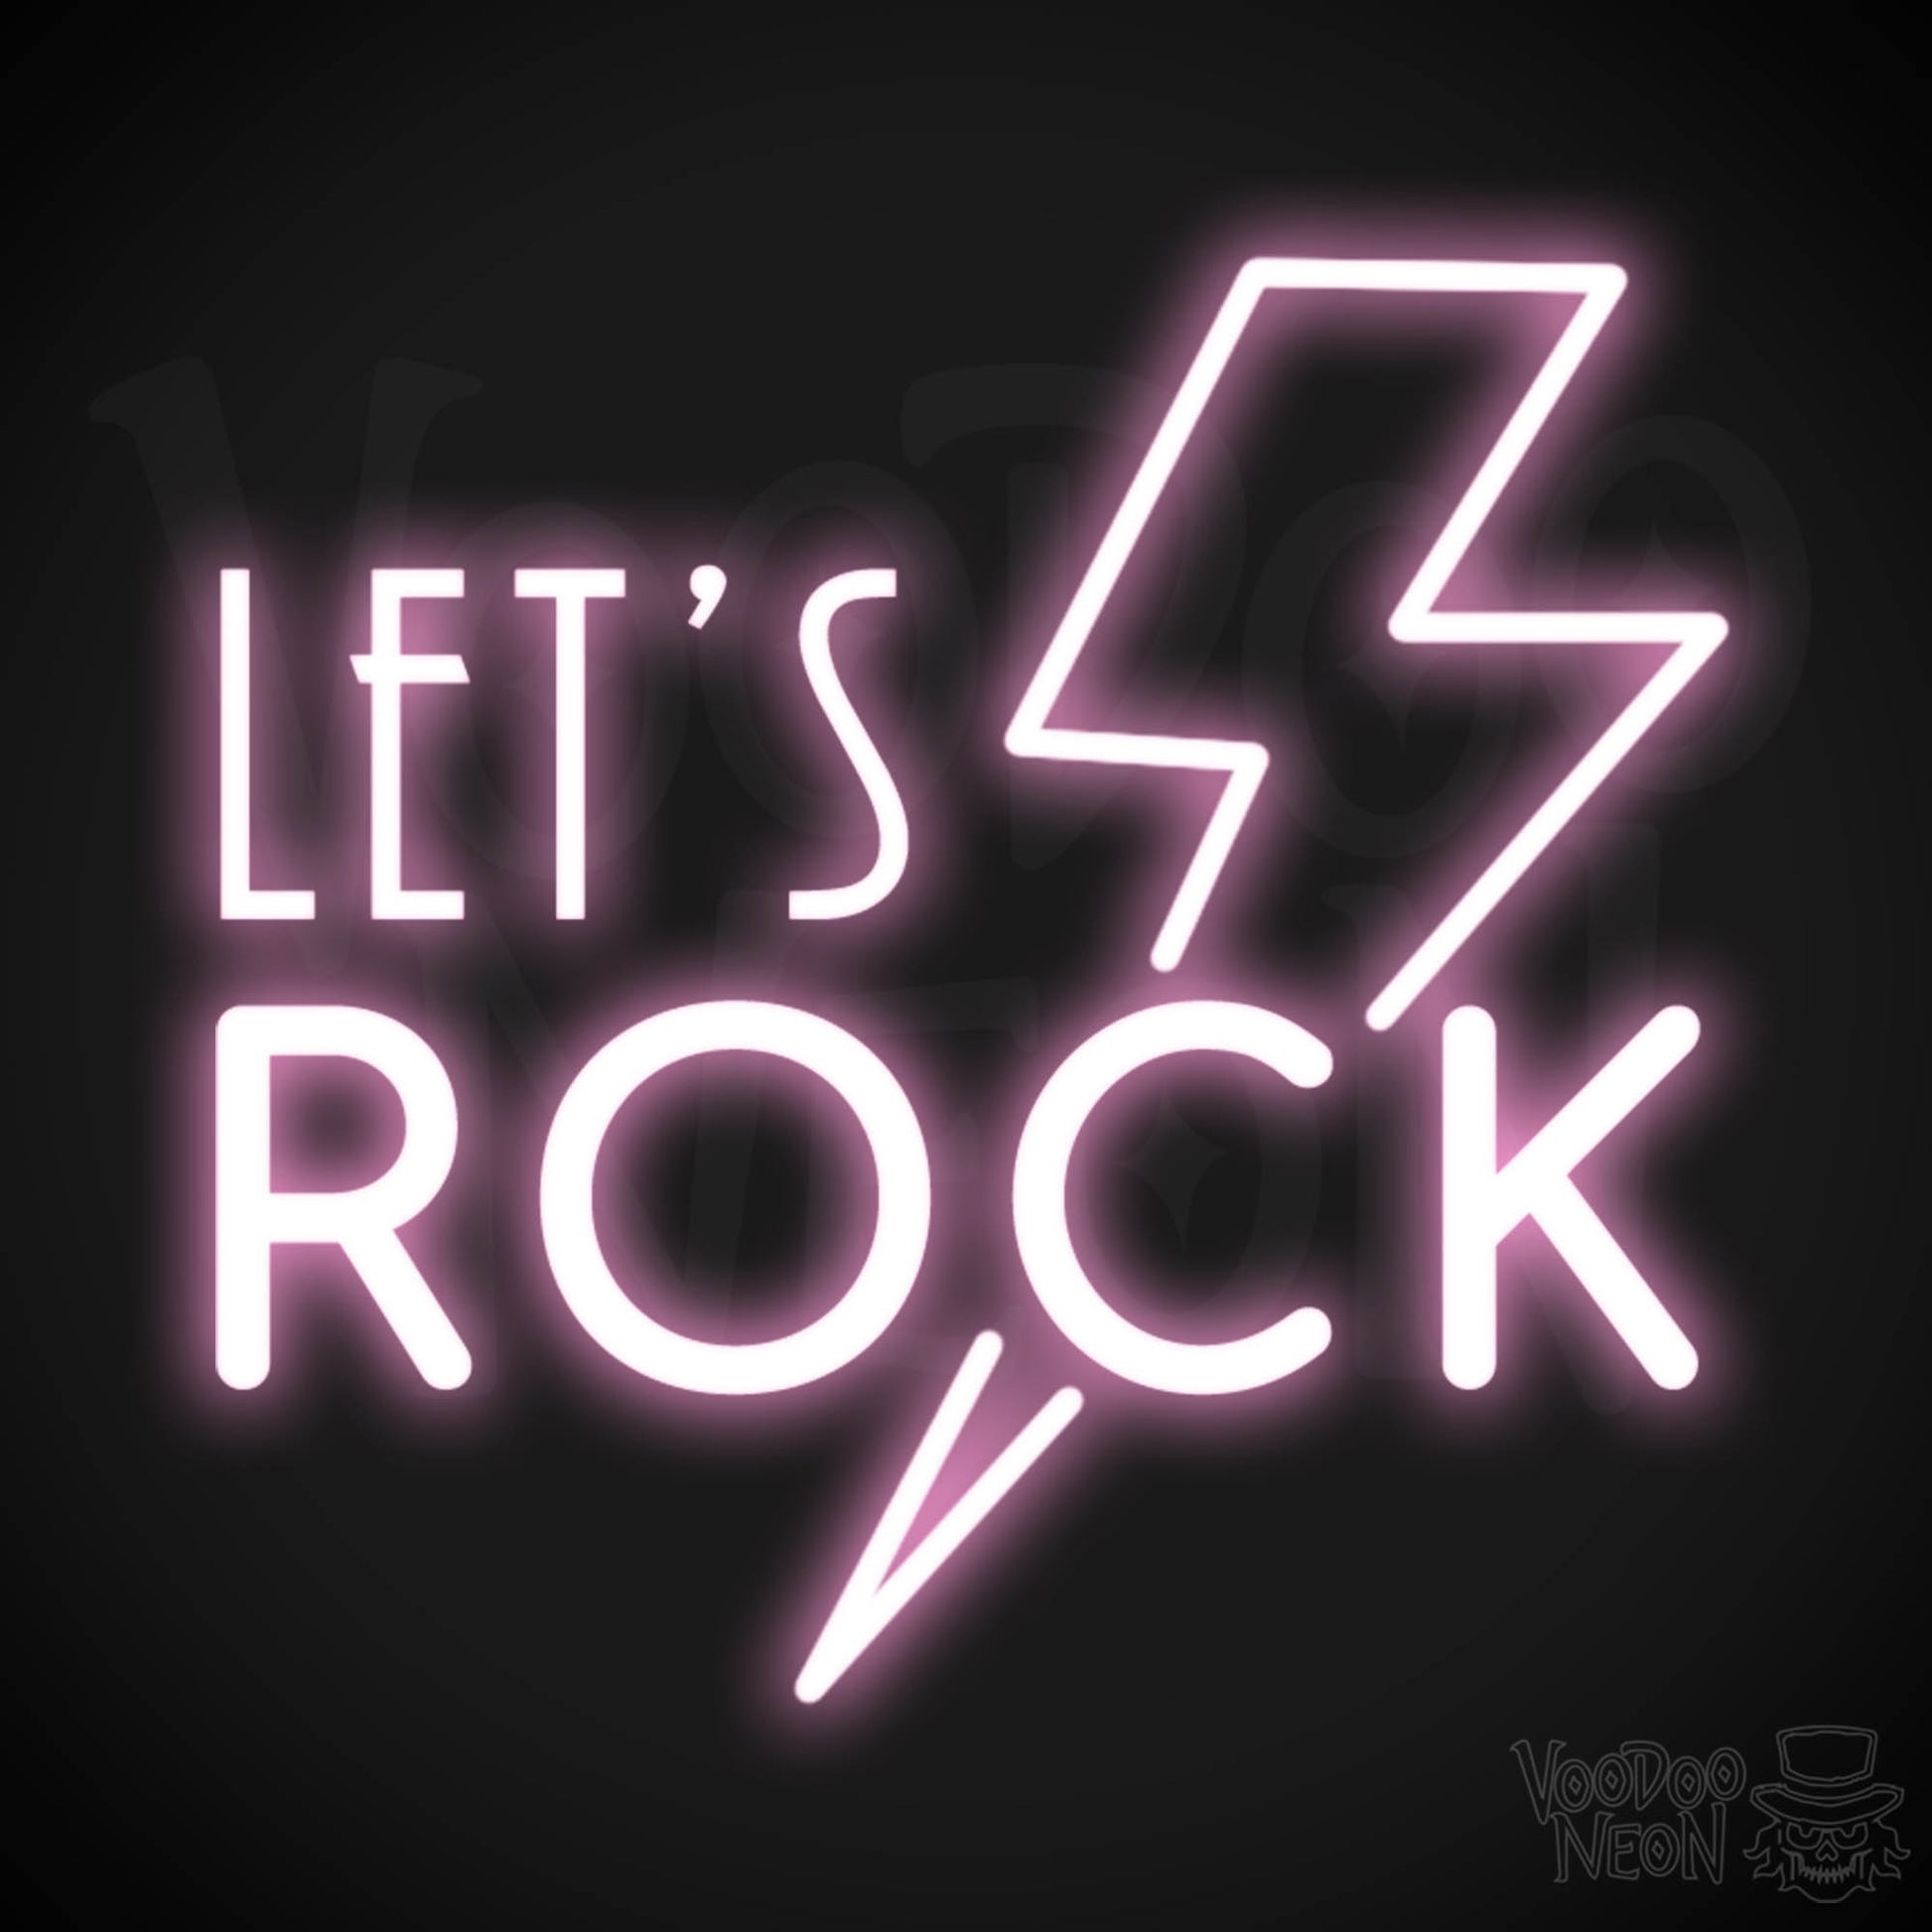 Let's Rock Neon Sign - Let's Rock LED Light Up Sign - Color Light Pink